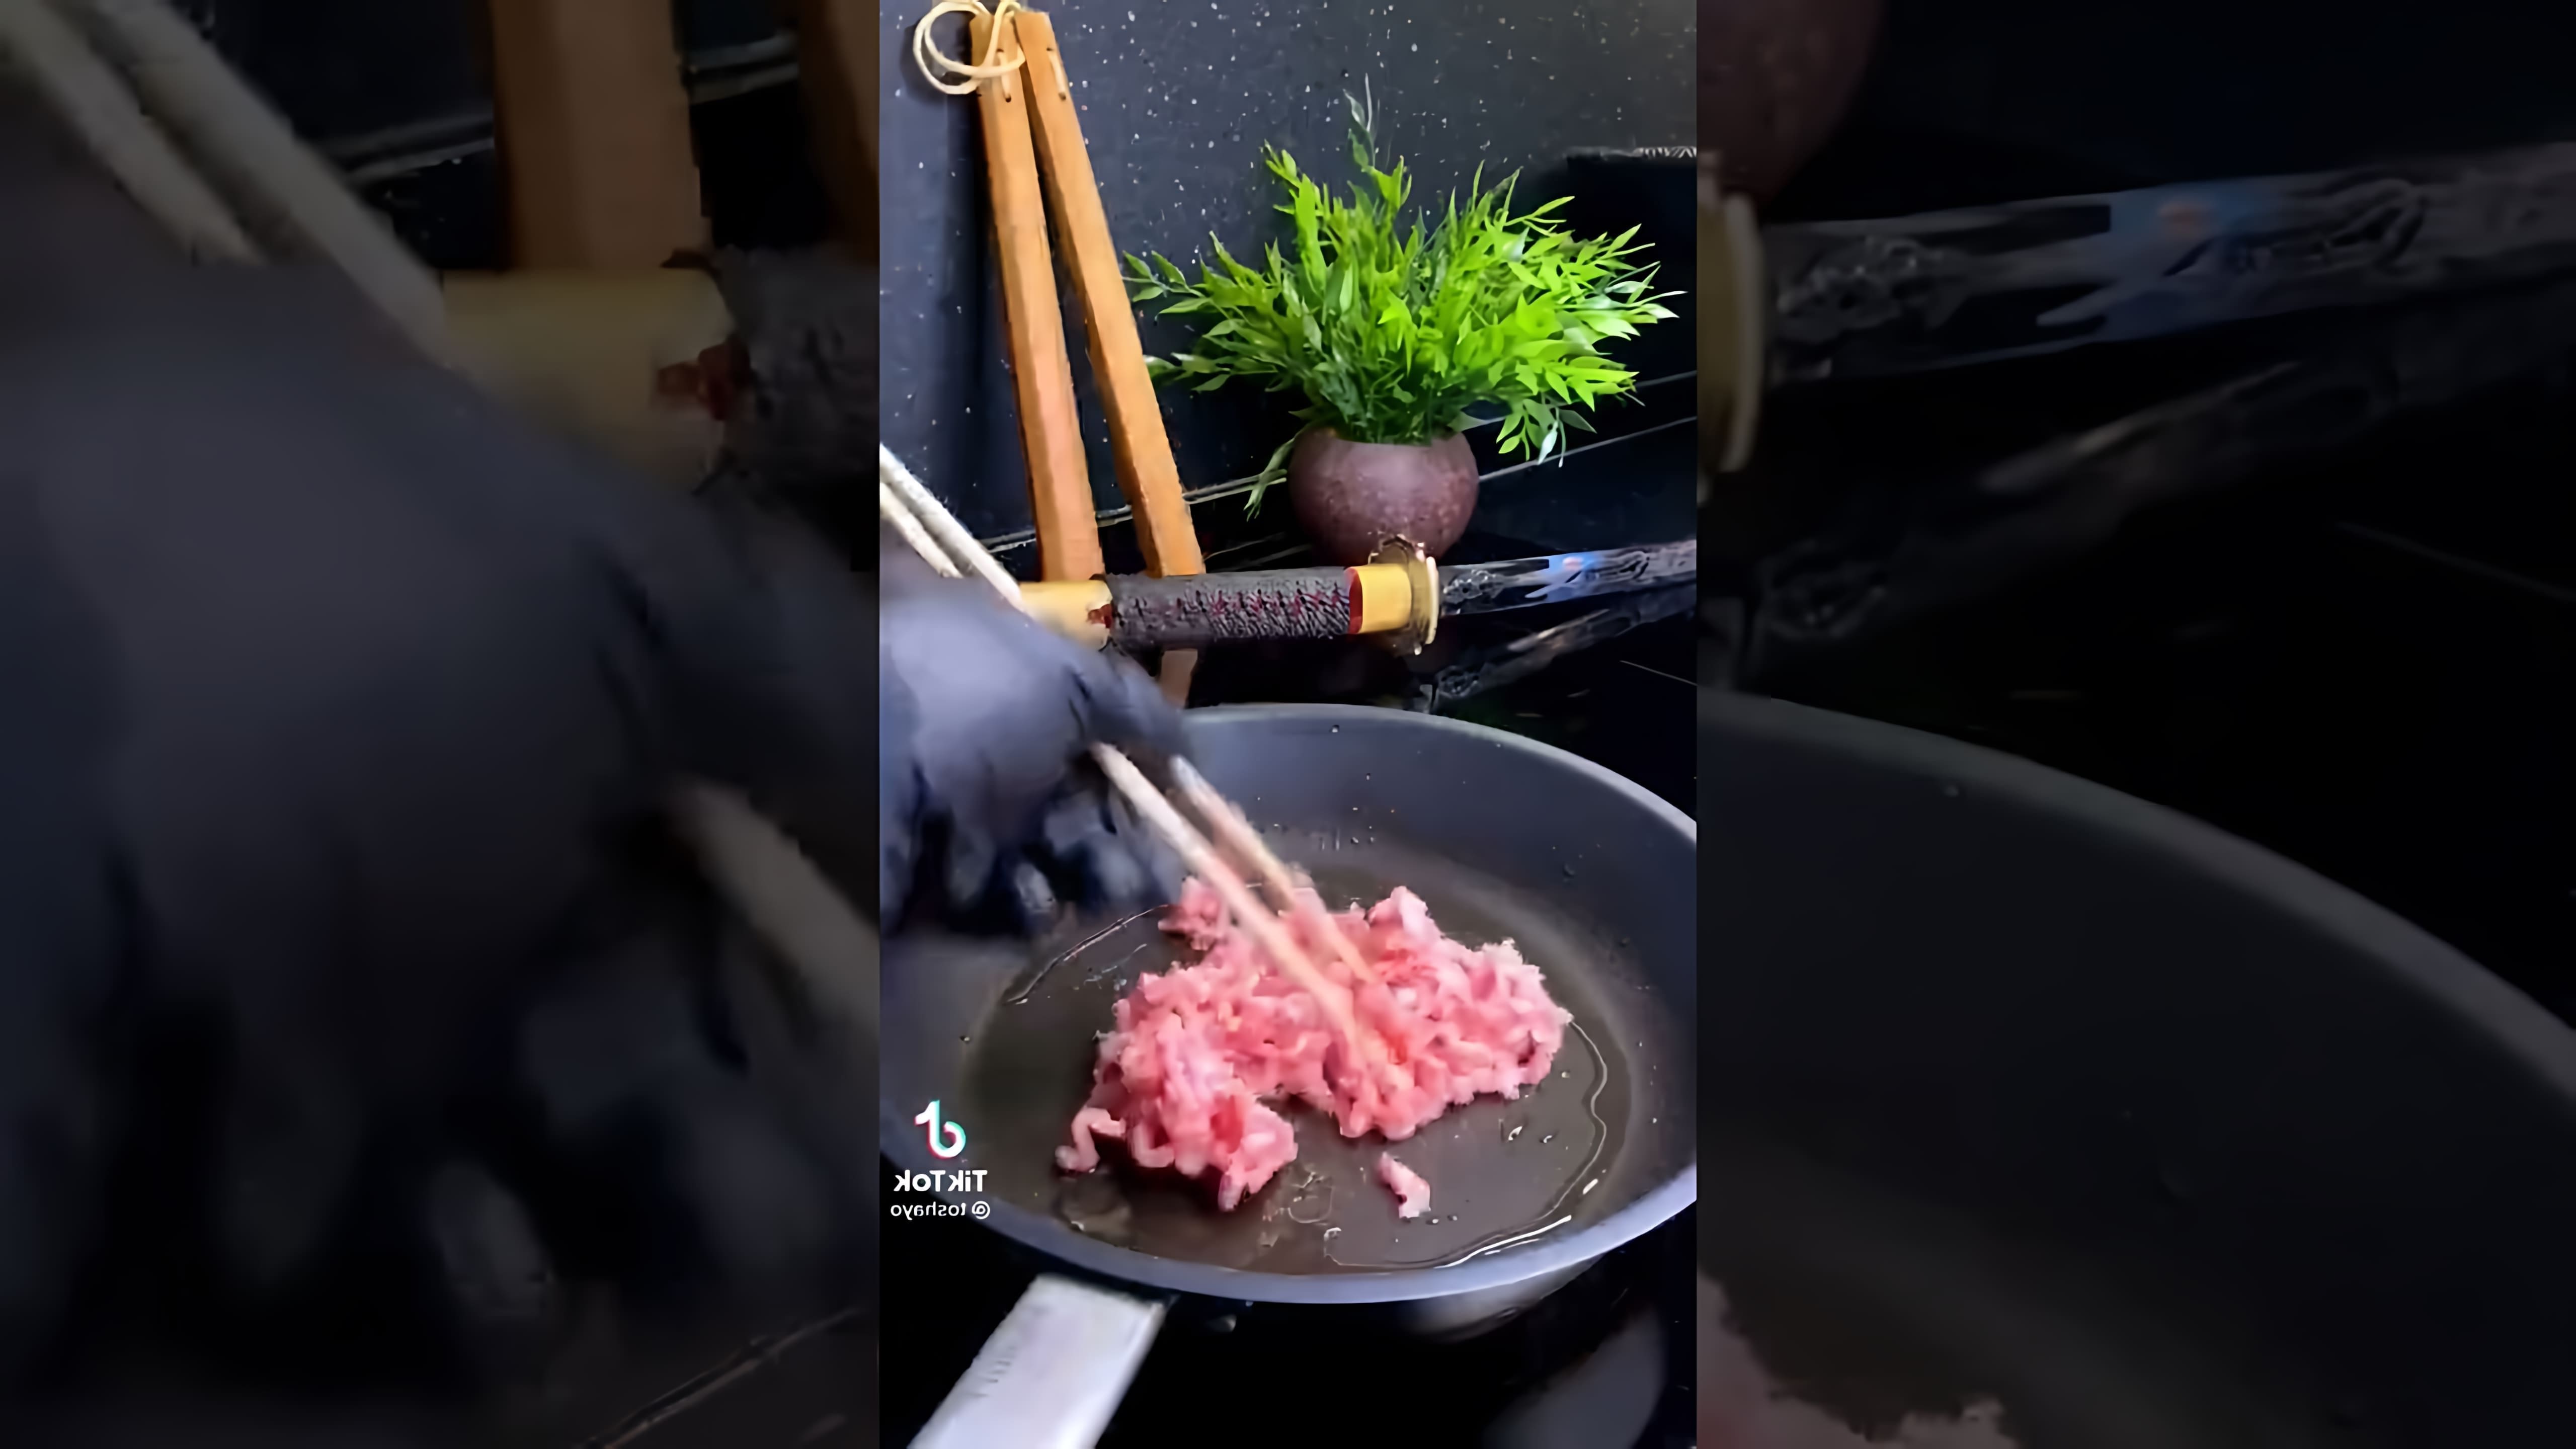 В этом видео демонстрируется процесс приготовления блюда в домашних условиях